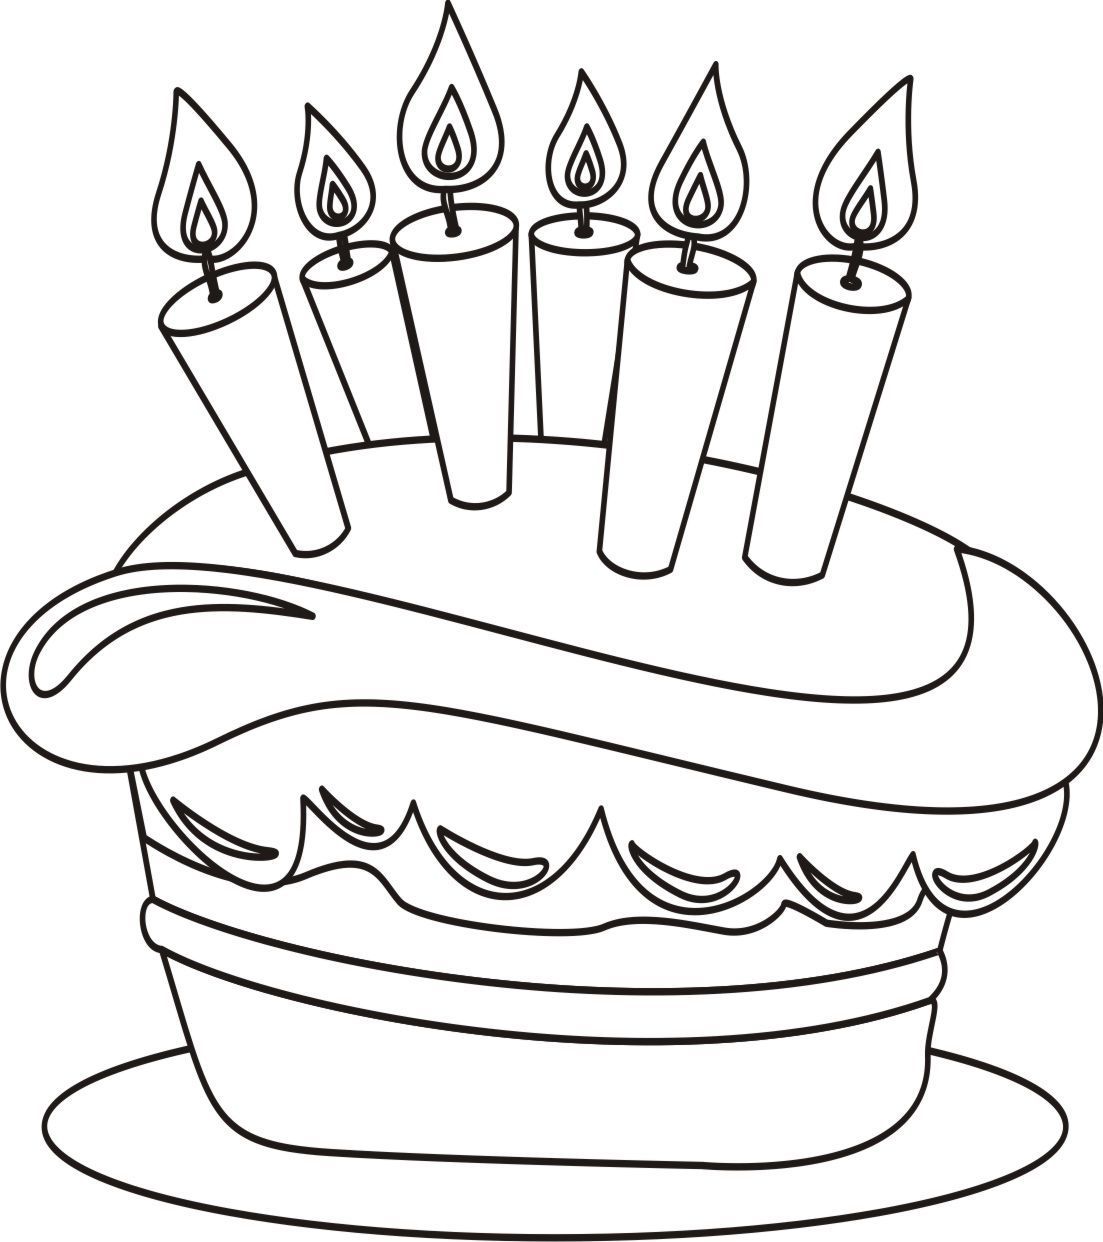 Desenho de criança com bolo de aniversário para colorir Desenhos 